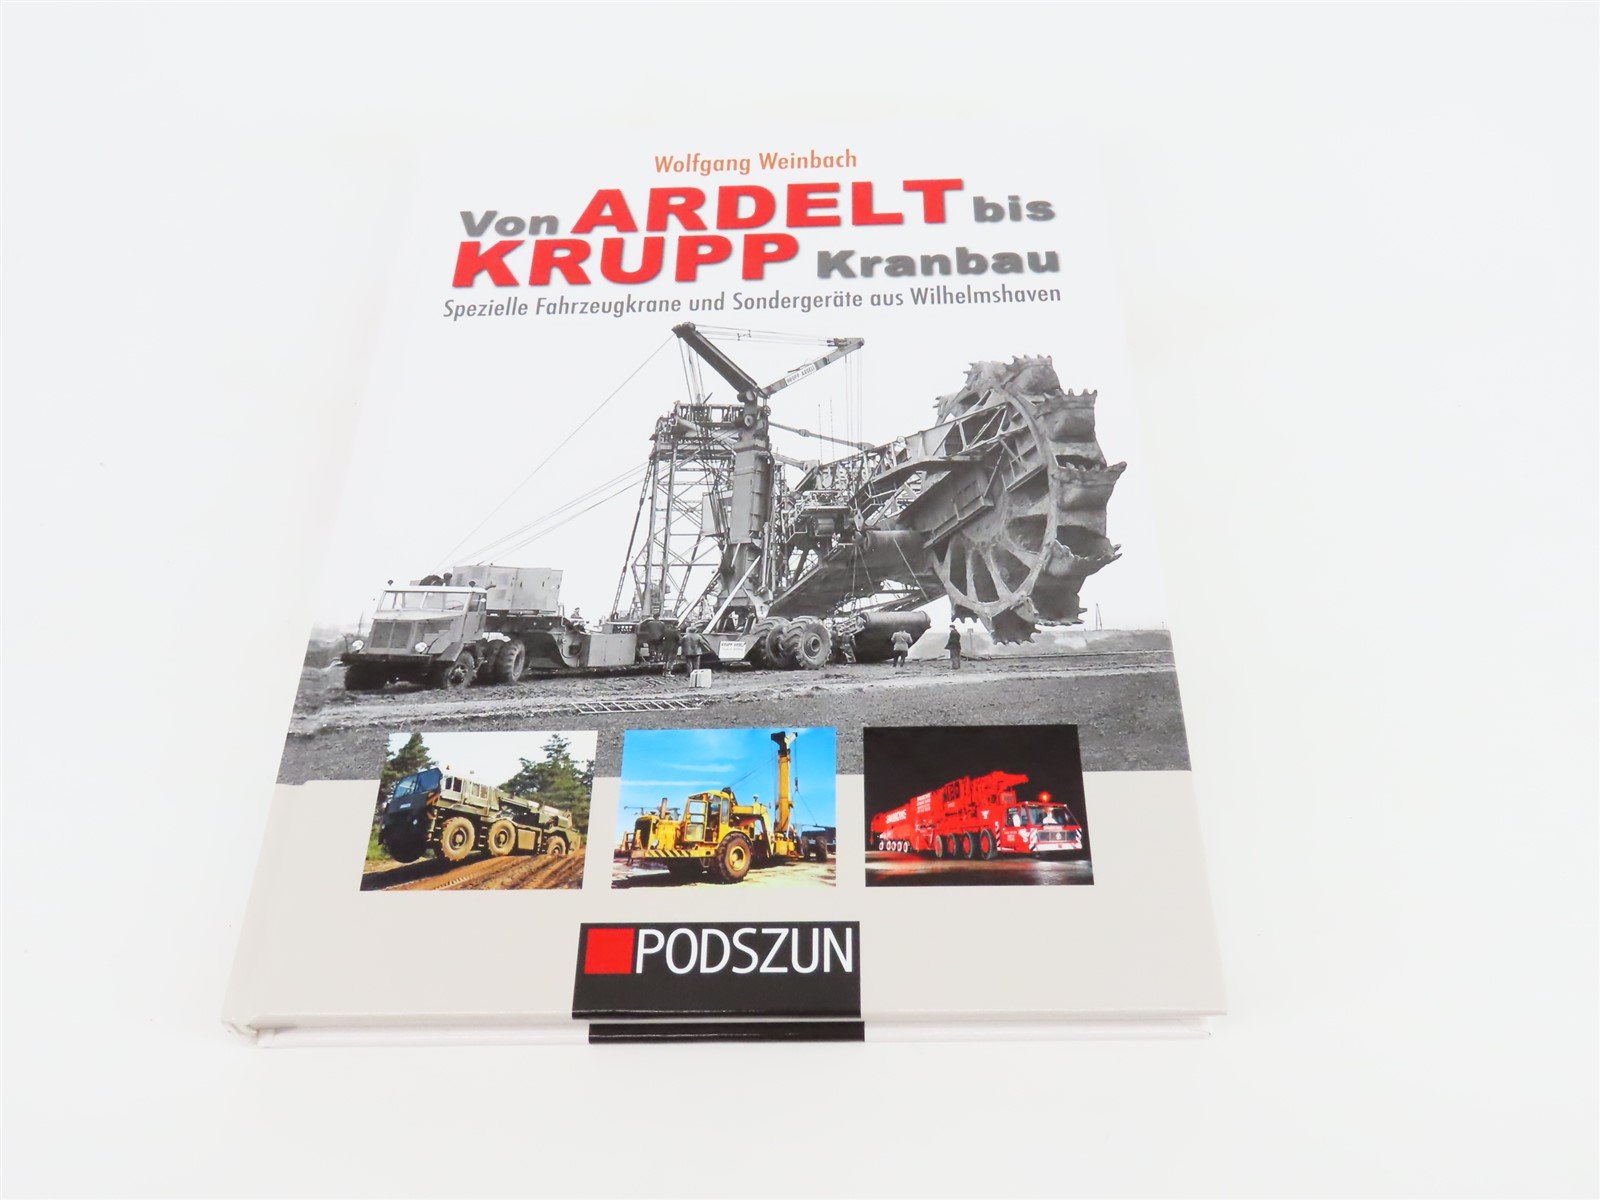 Von Ardelt bis Krupp Kanbau by Wolfgang Weinbach ©2013 HC Book